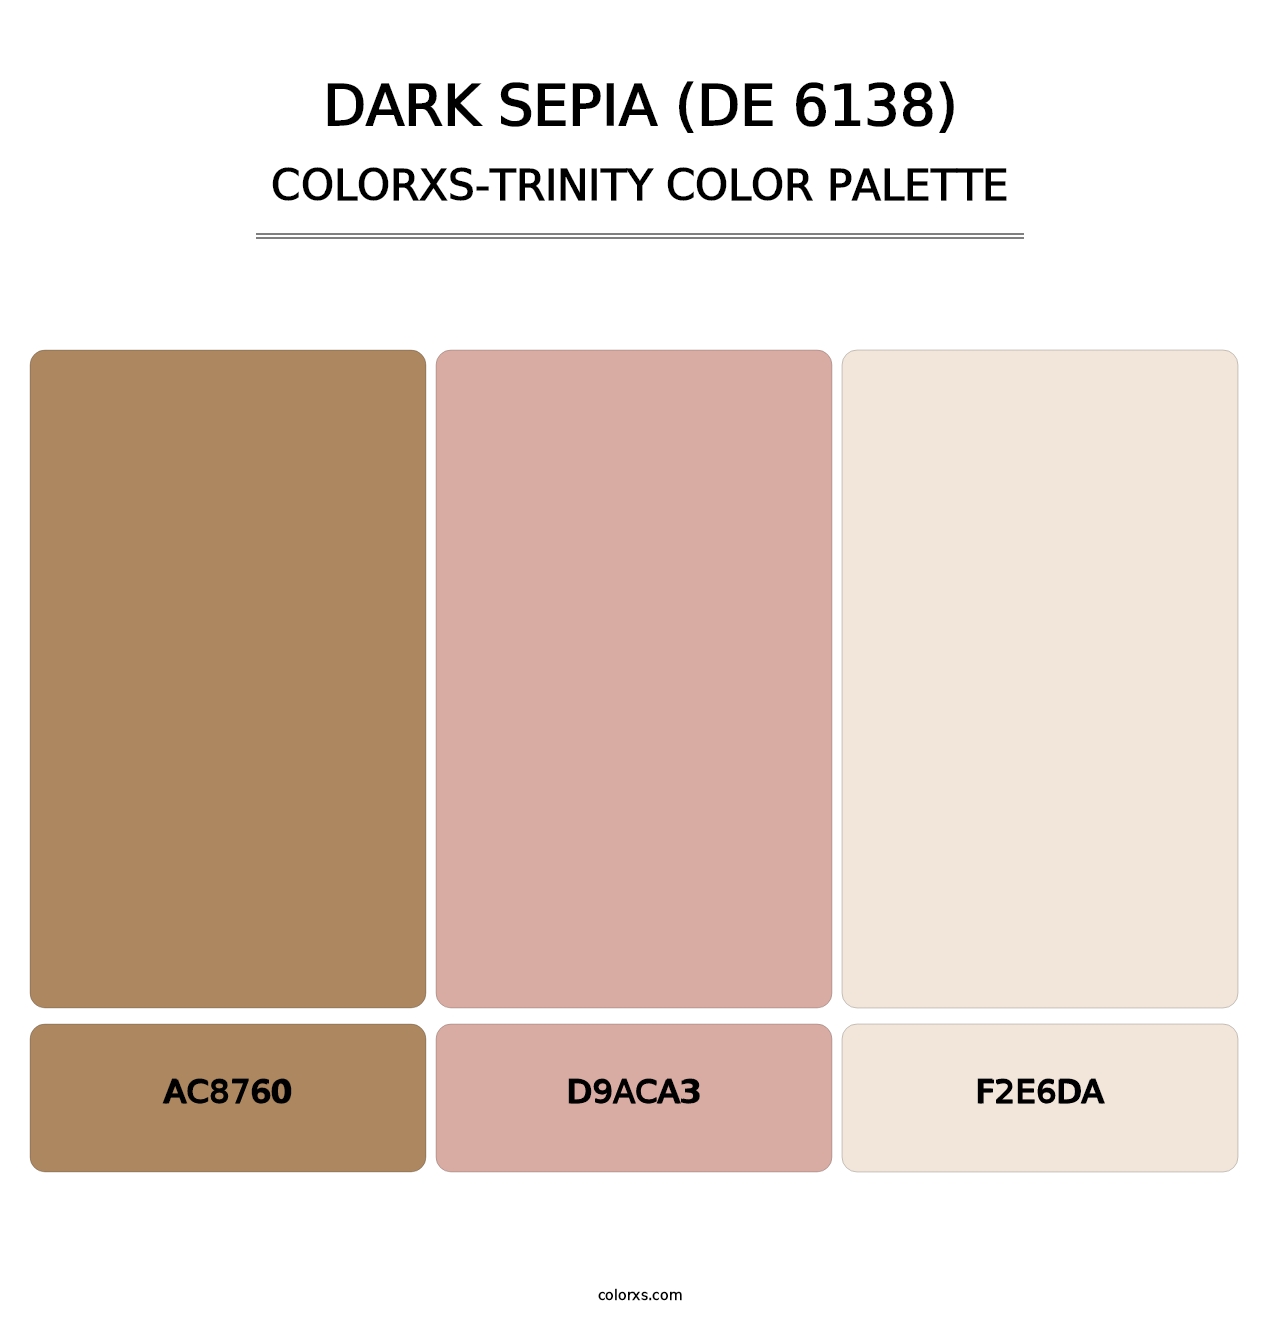 Dark Sepia (DE 6138) - Colorxs Trinity Palette